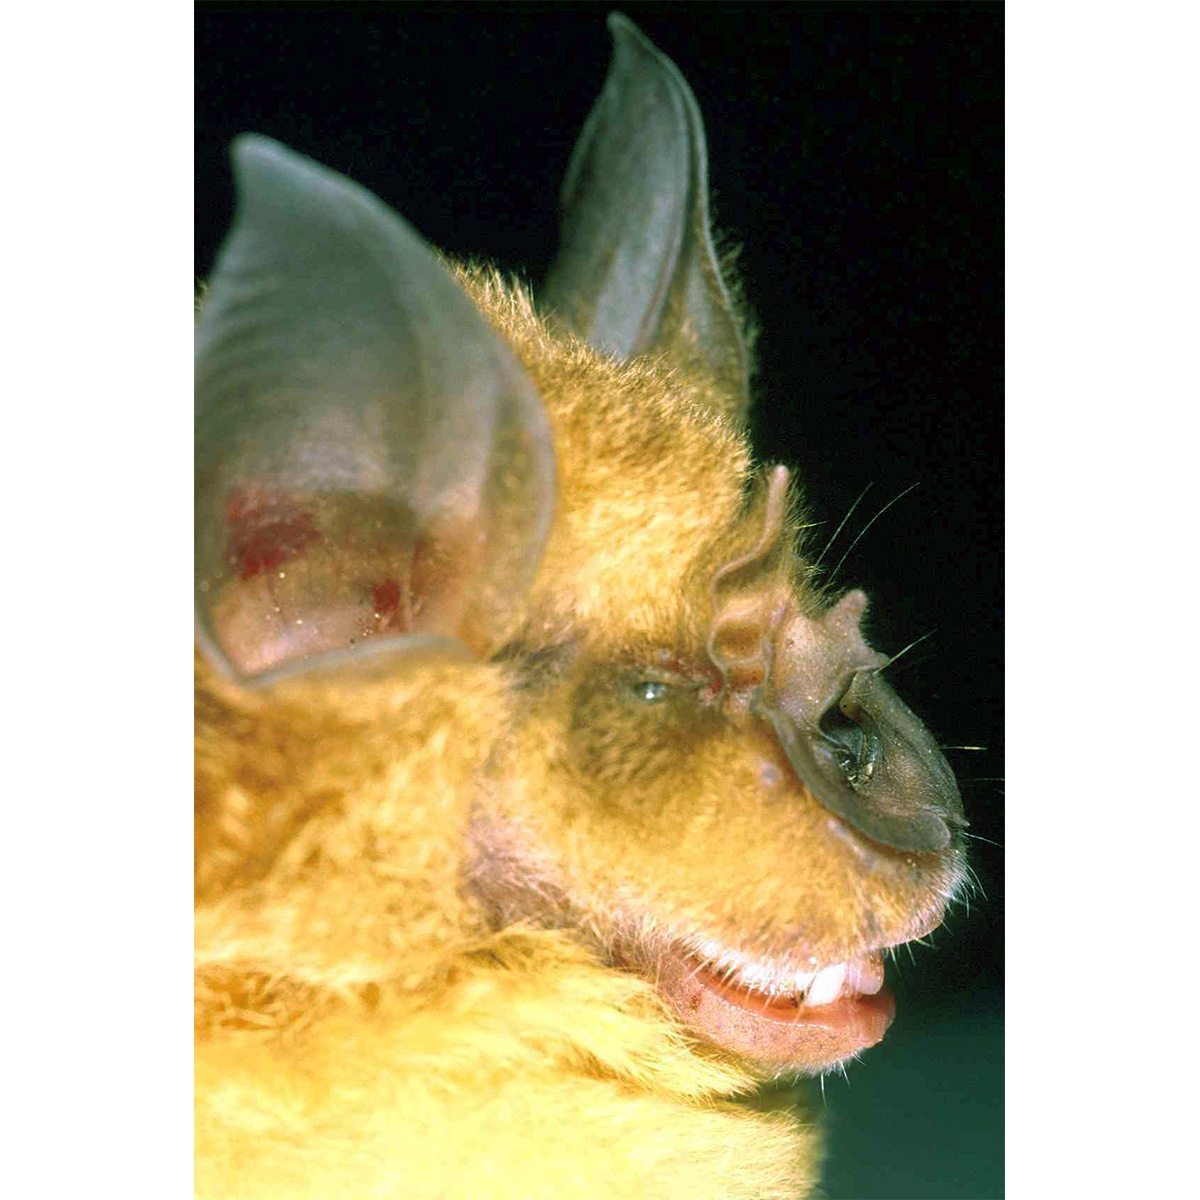 Sakeji Horseshoe Bat (Rhinolophus sakejiensis) Фото №2